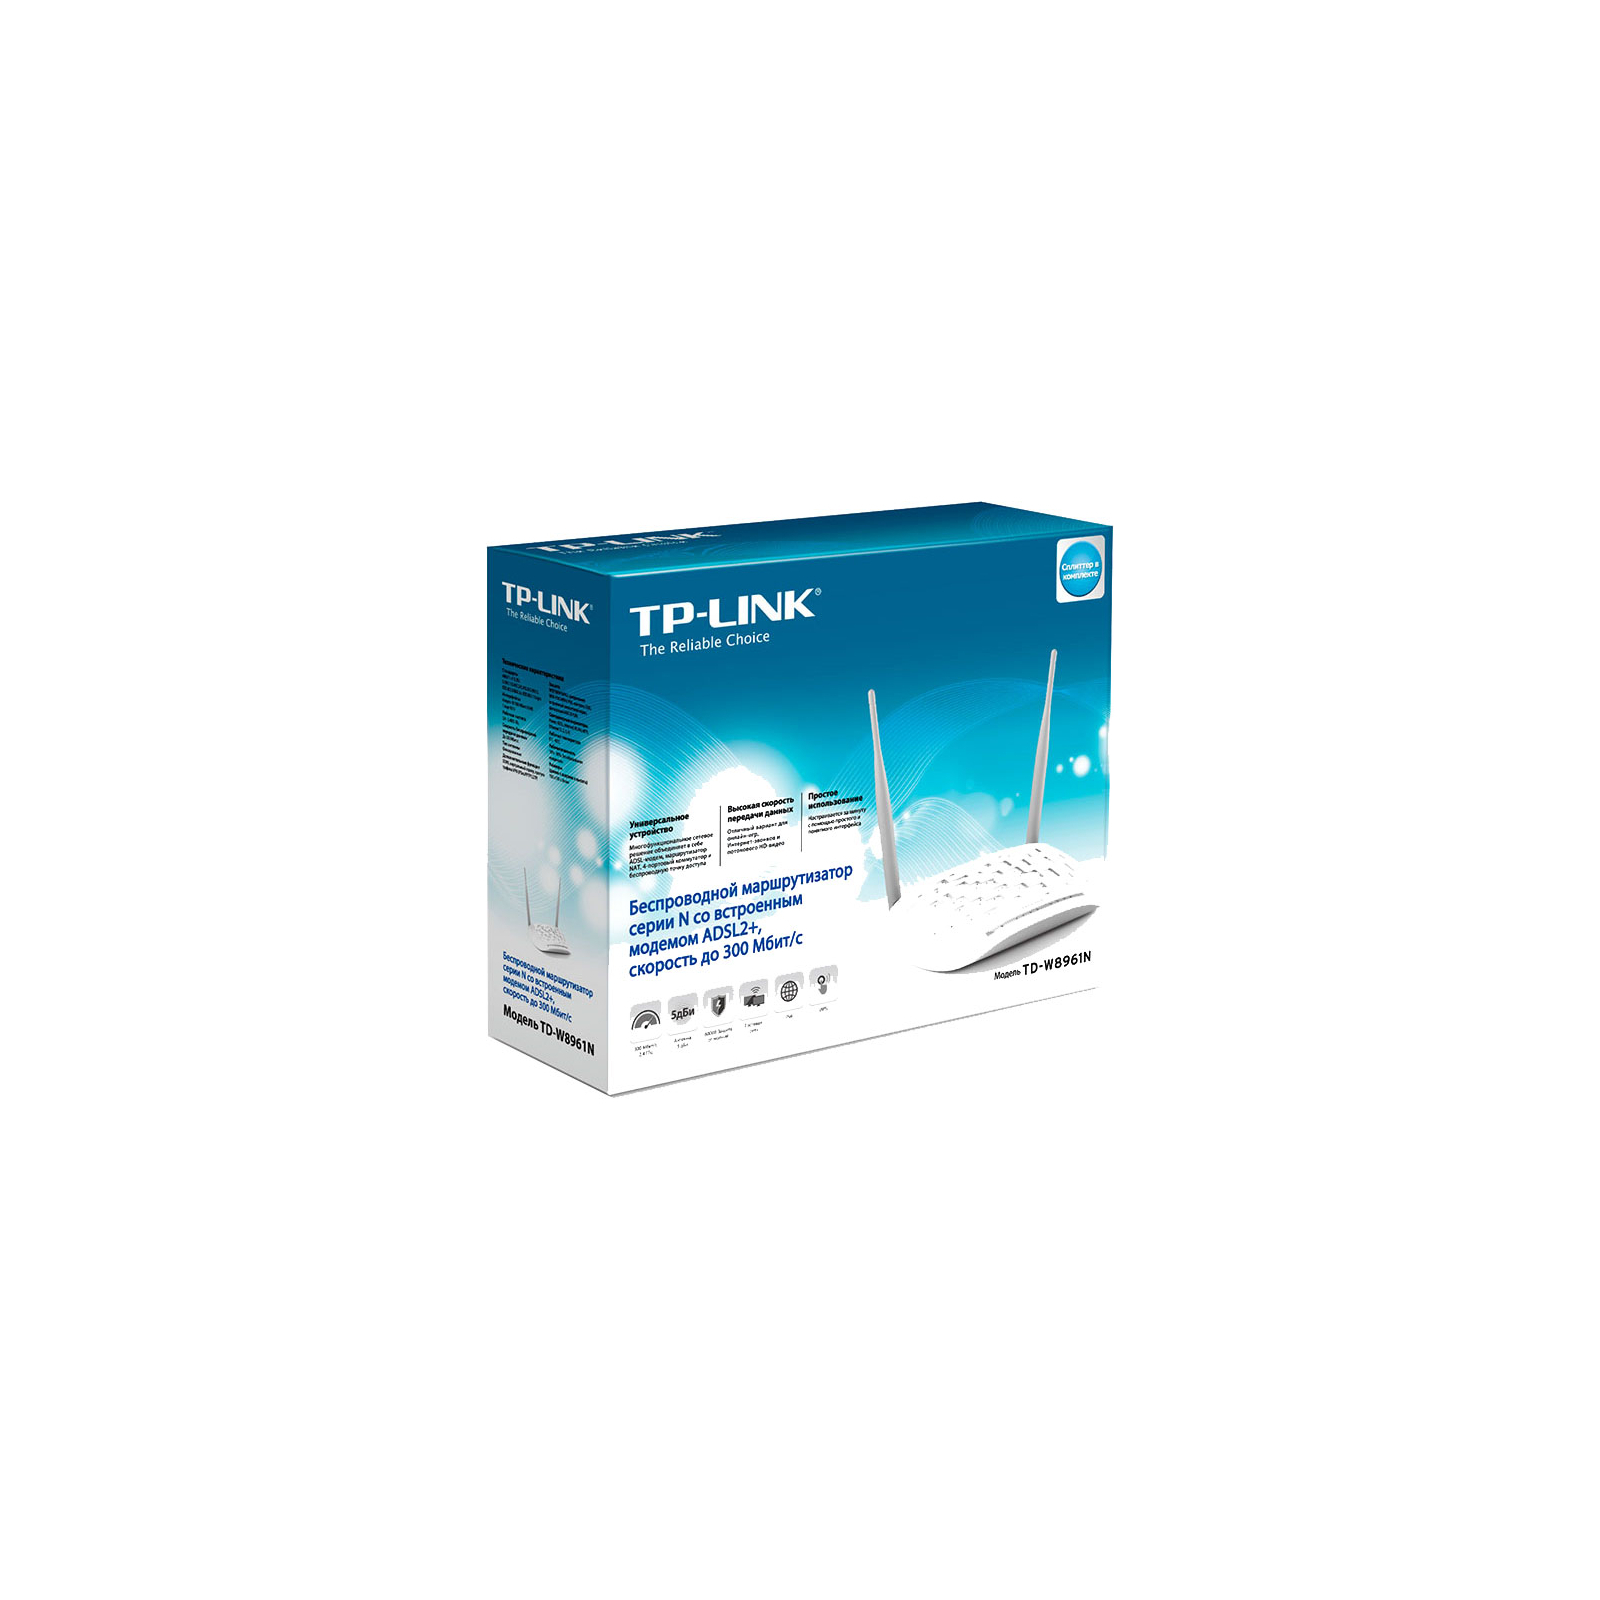 Модем TPLink TDW8961N цены в Киеве и Украине купить в магазине